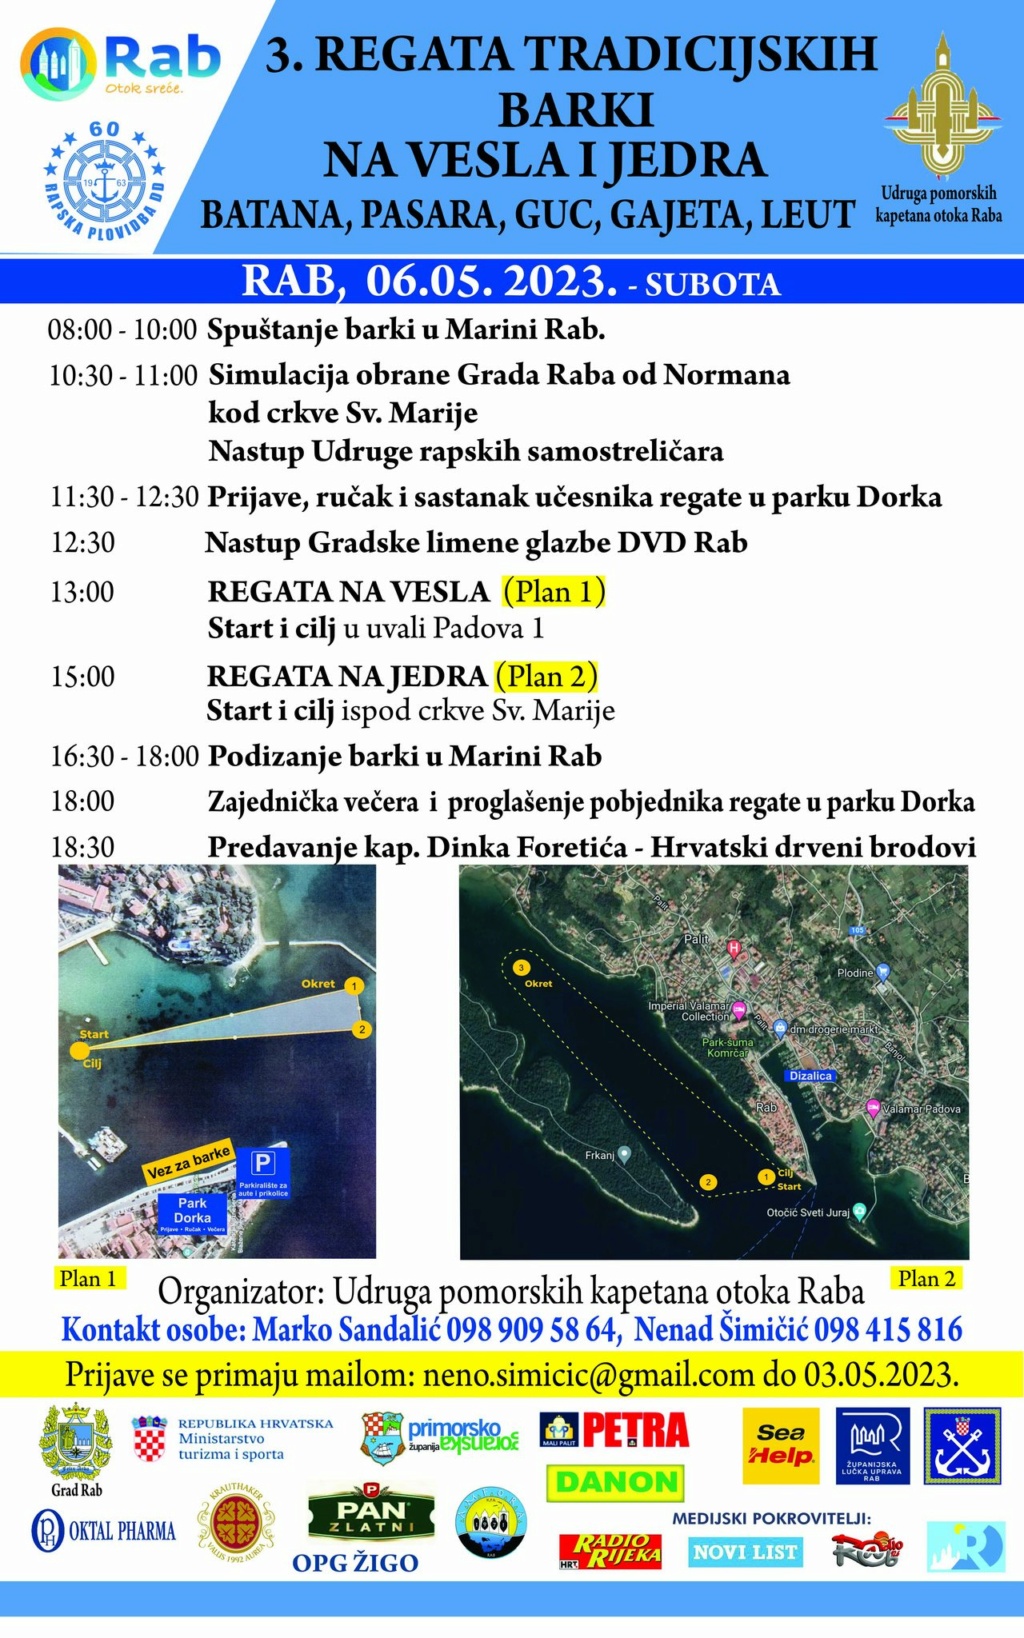 3. Rapska regata tradicijskih barki na vesla i jedra - subota 06.05. Rapska11